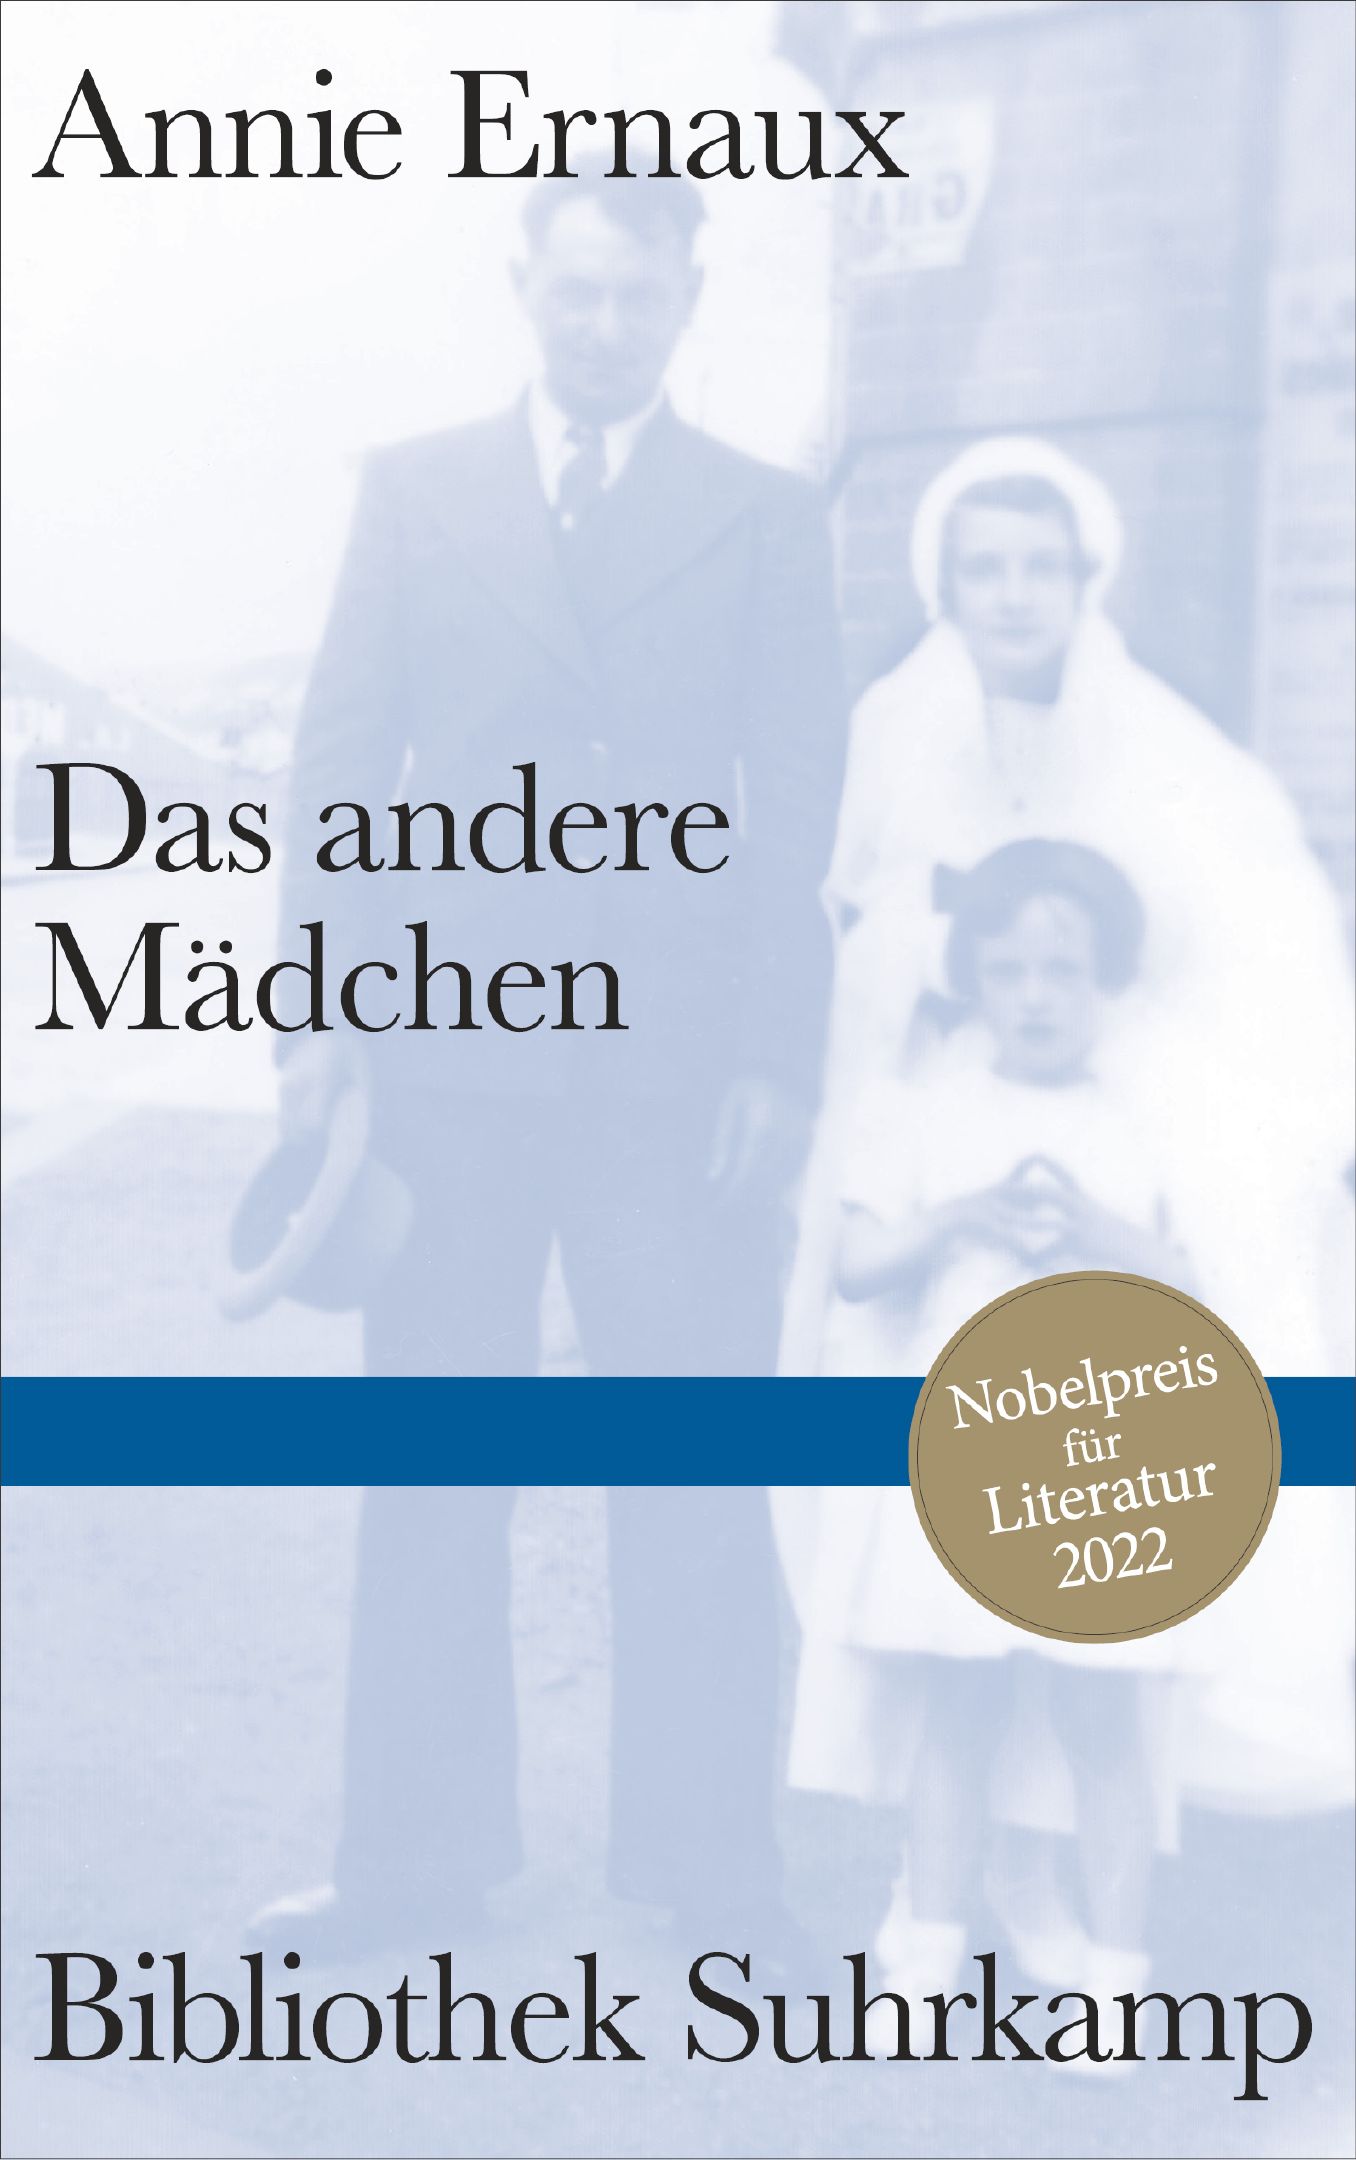 Annie Ernaux: Das andere Mädchen (Hardcover, Deutsch language, 2022, Suhrkamp Berlin)